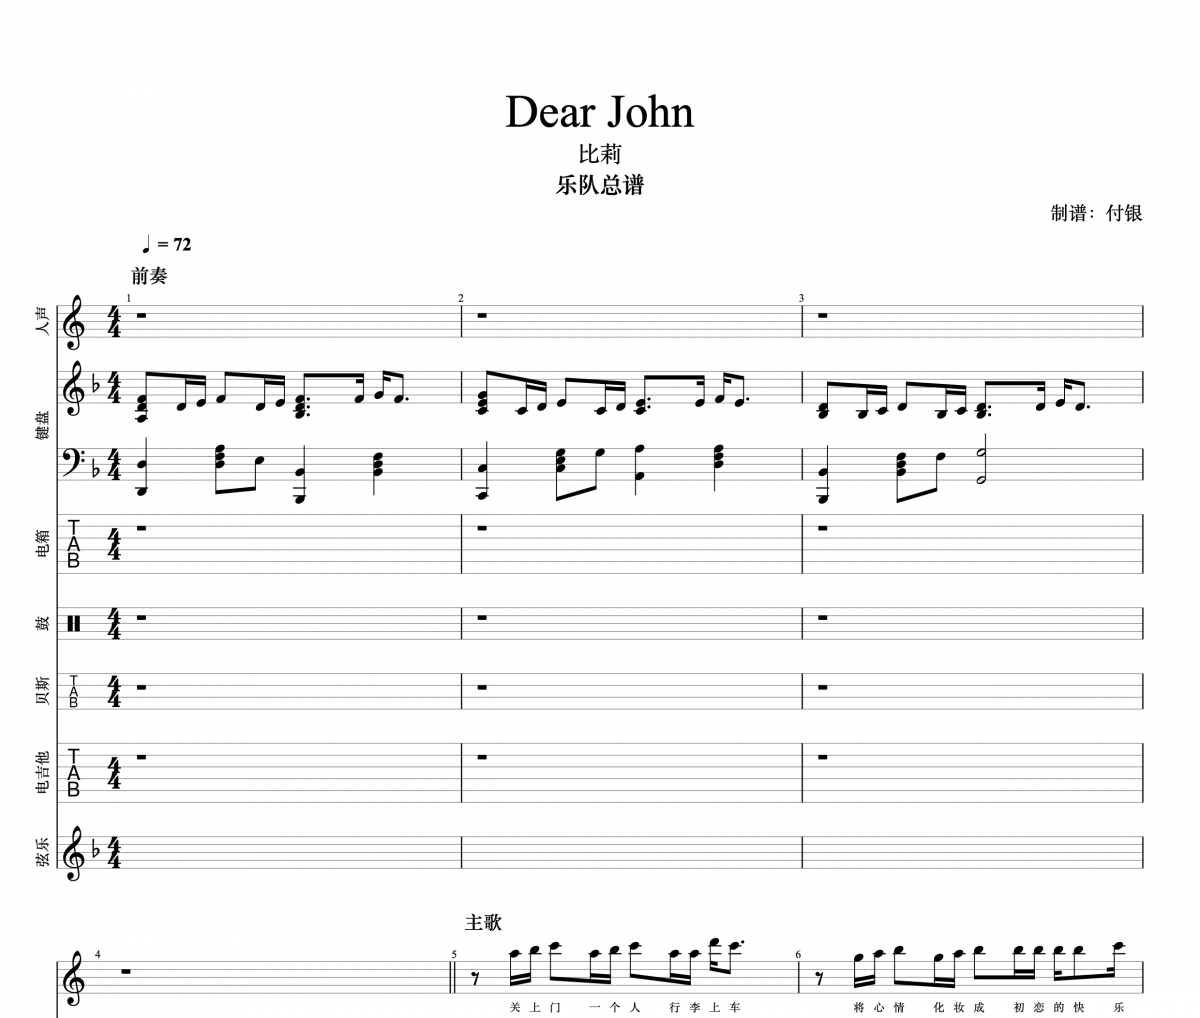 比莉-Dear John总谱 键盘+电吉他+弦乐+木吉他+贝斯+架子鼓谱